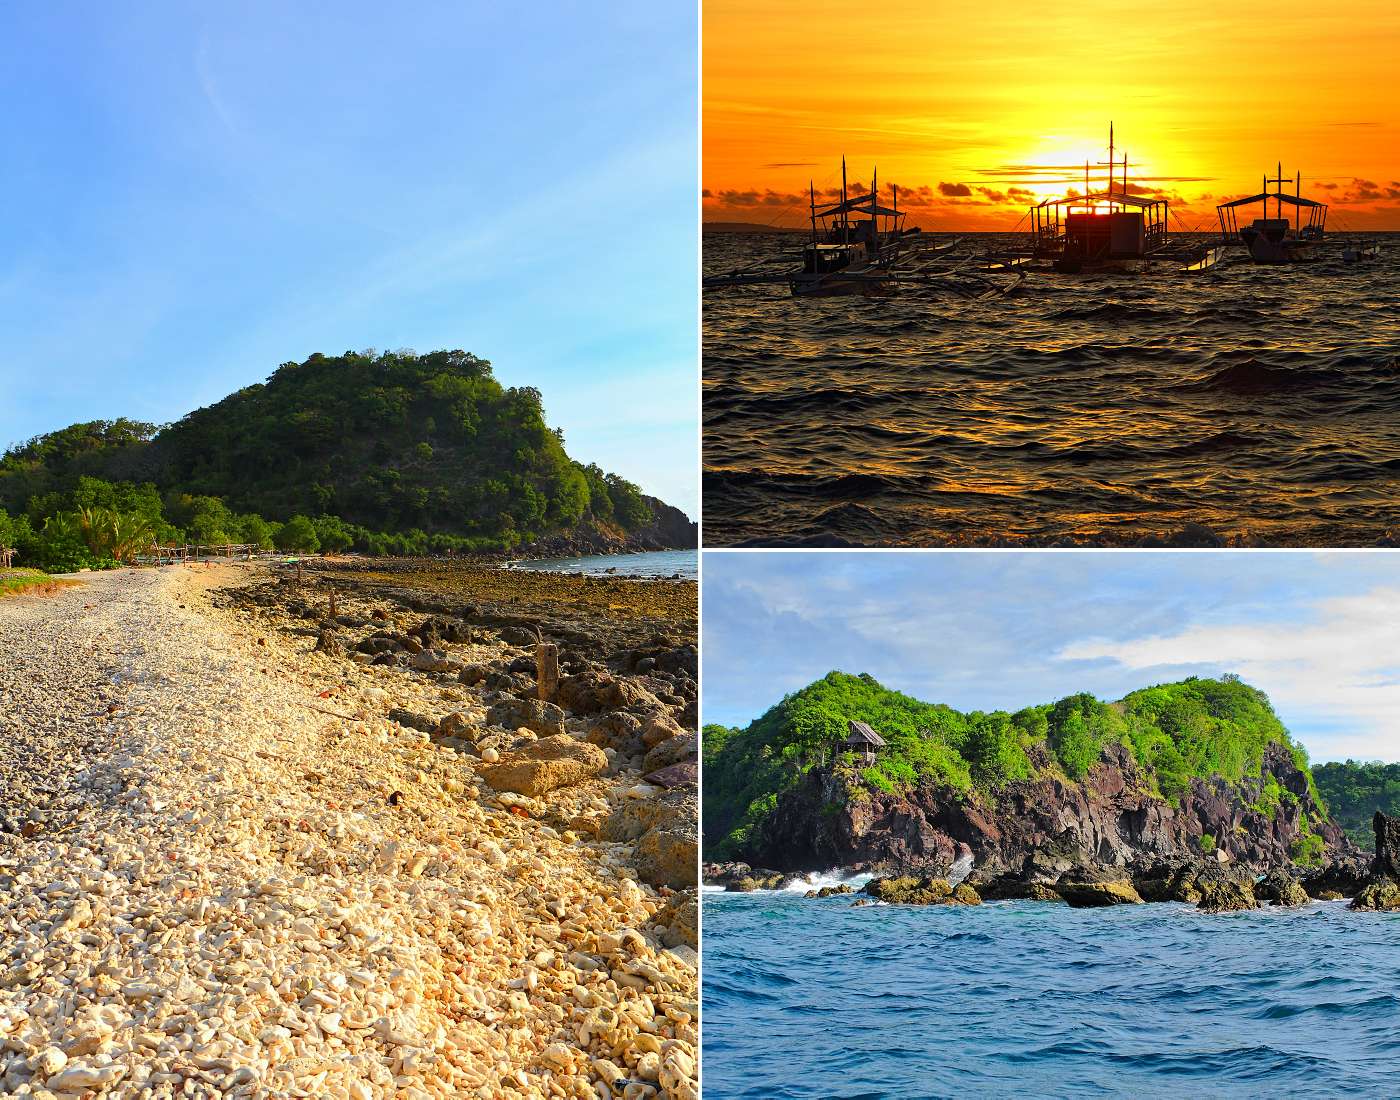 Kolekce snímů z ostrova Apo - členité pobřeží, rybářské lodě, pláže a krajina.